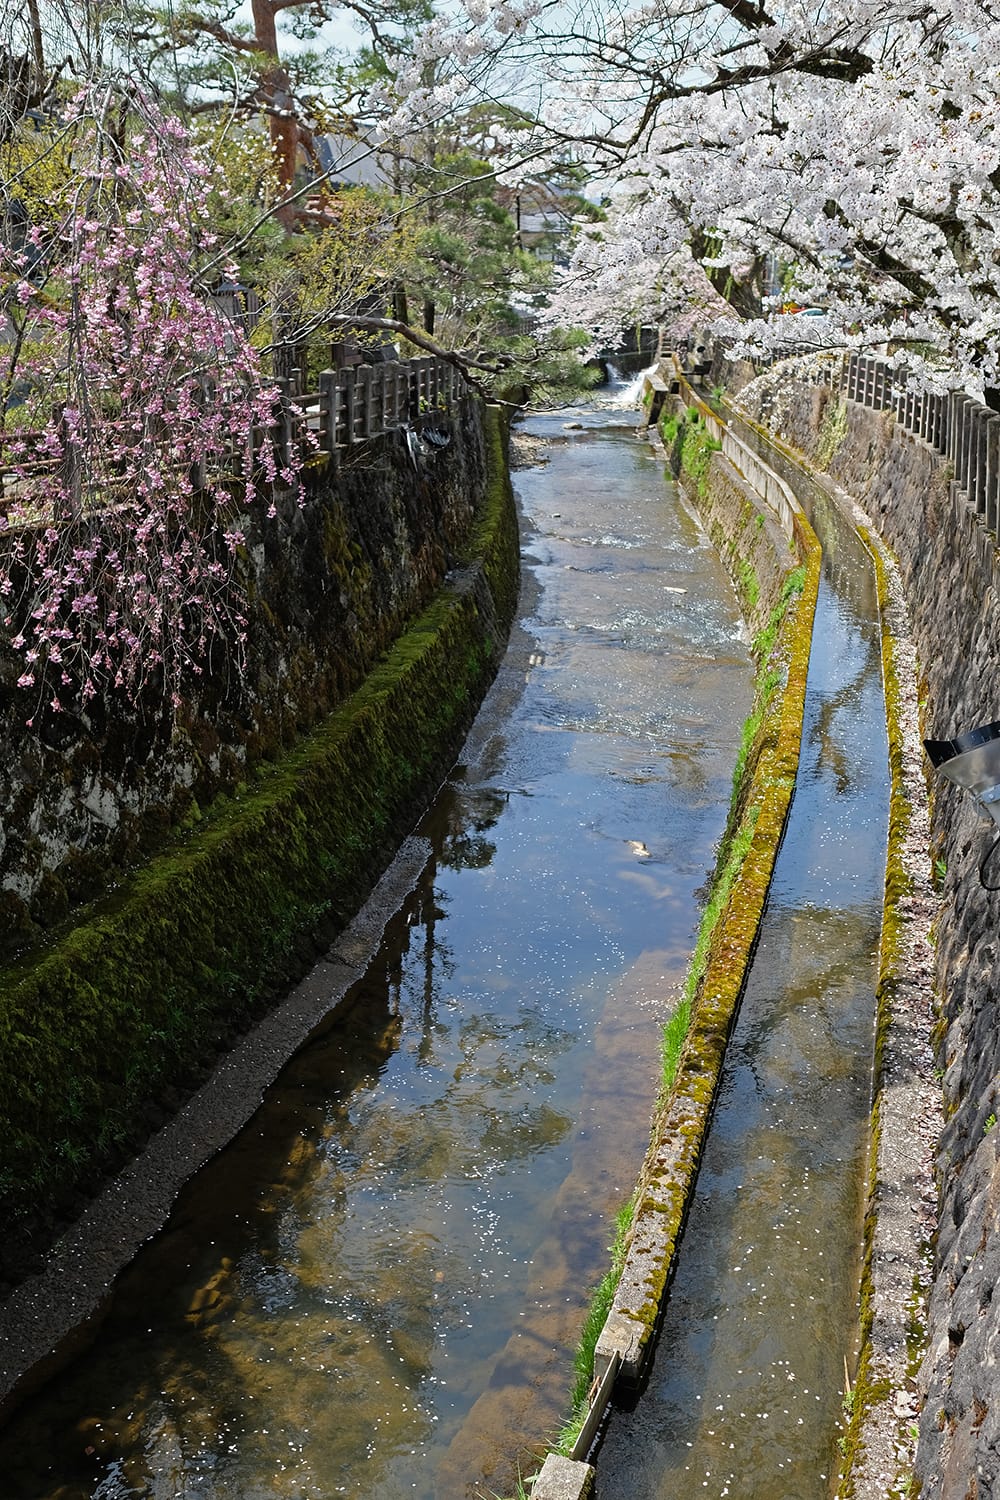 飛騨高山の江名子川の川面を流れる散った桜の花びら